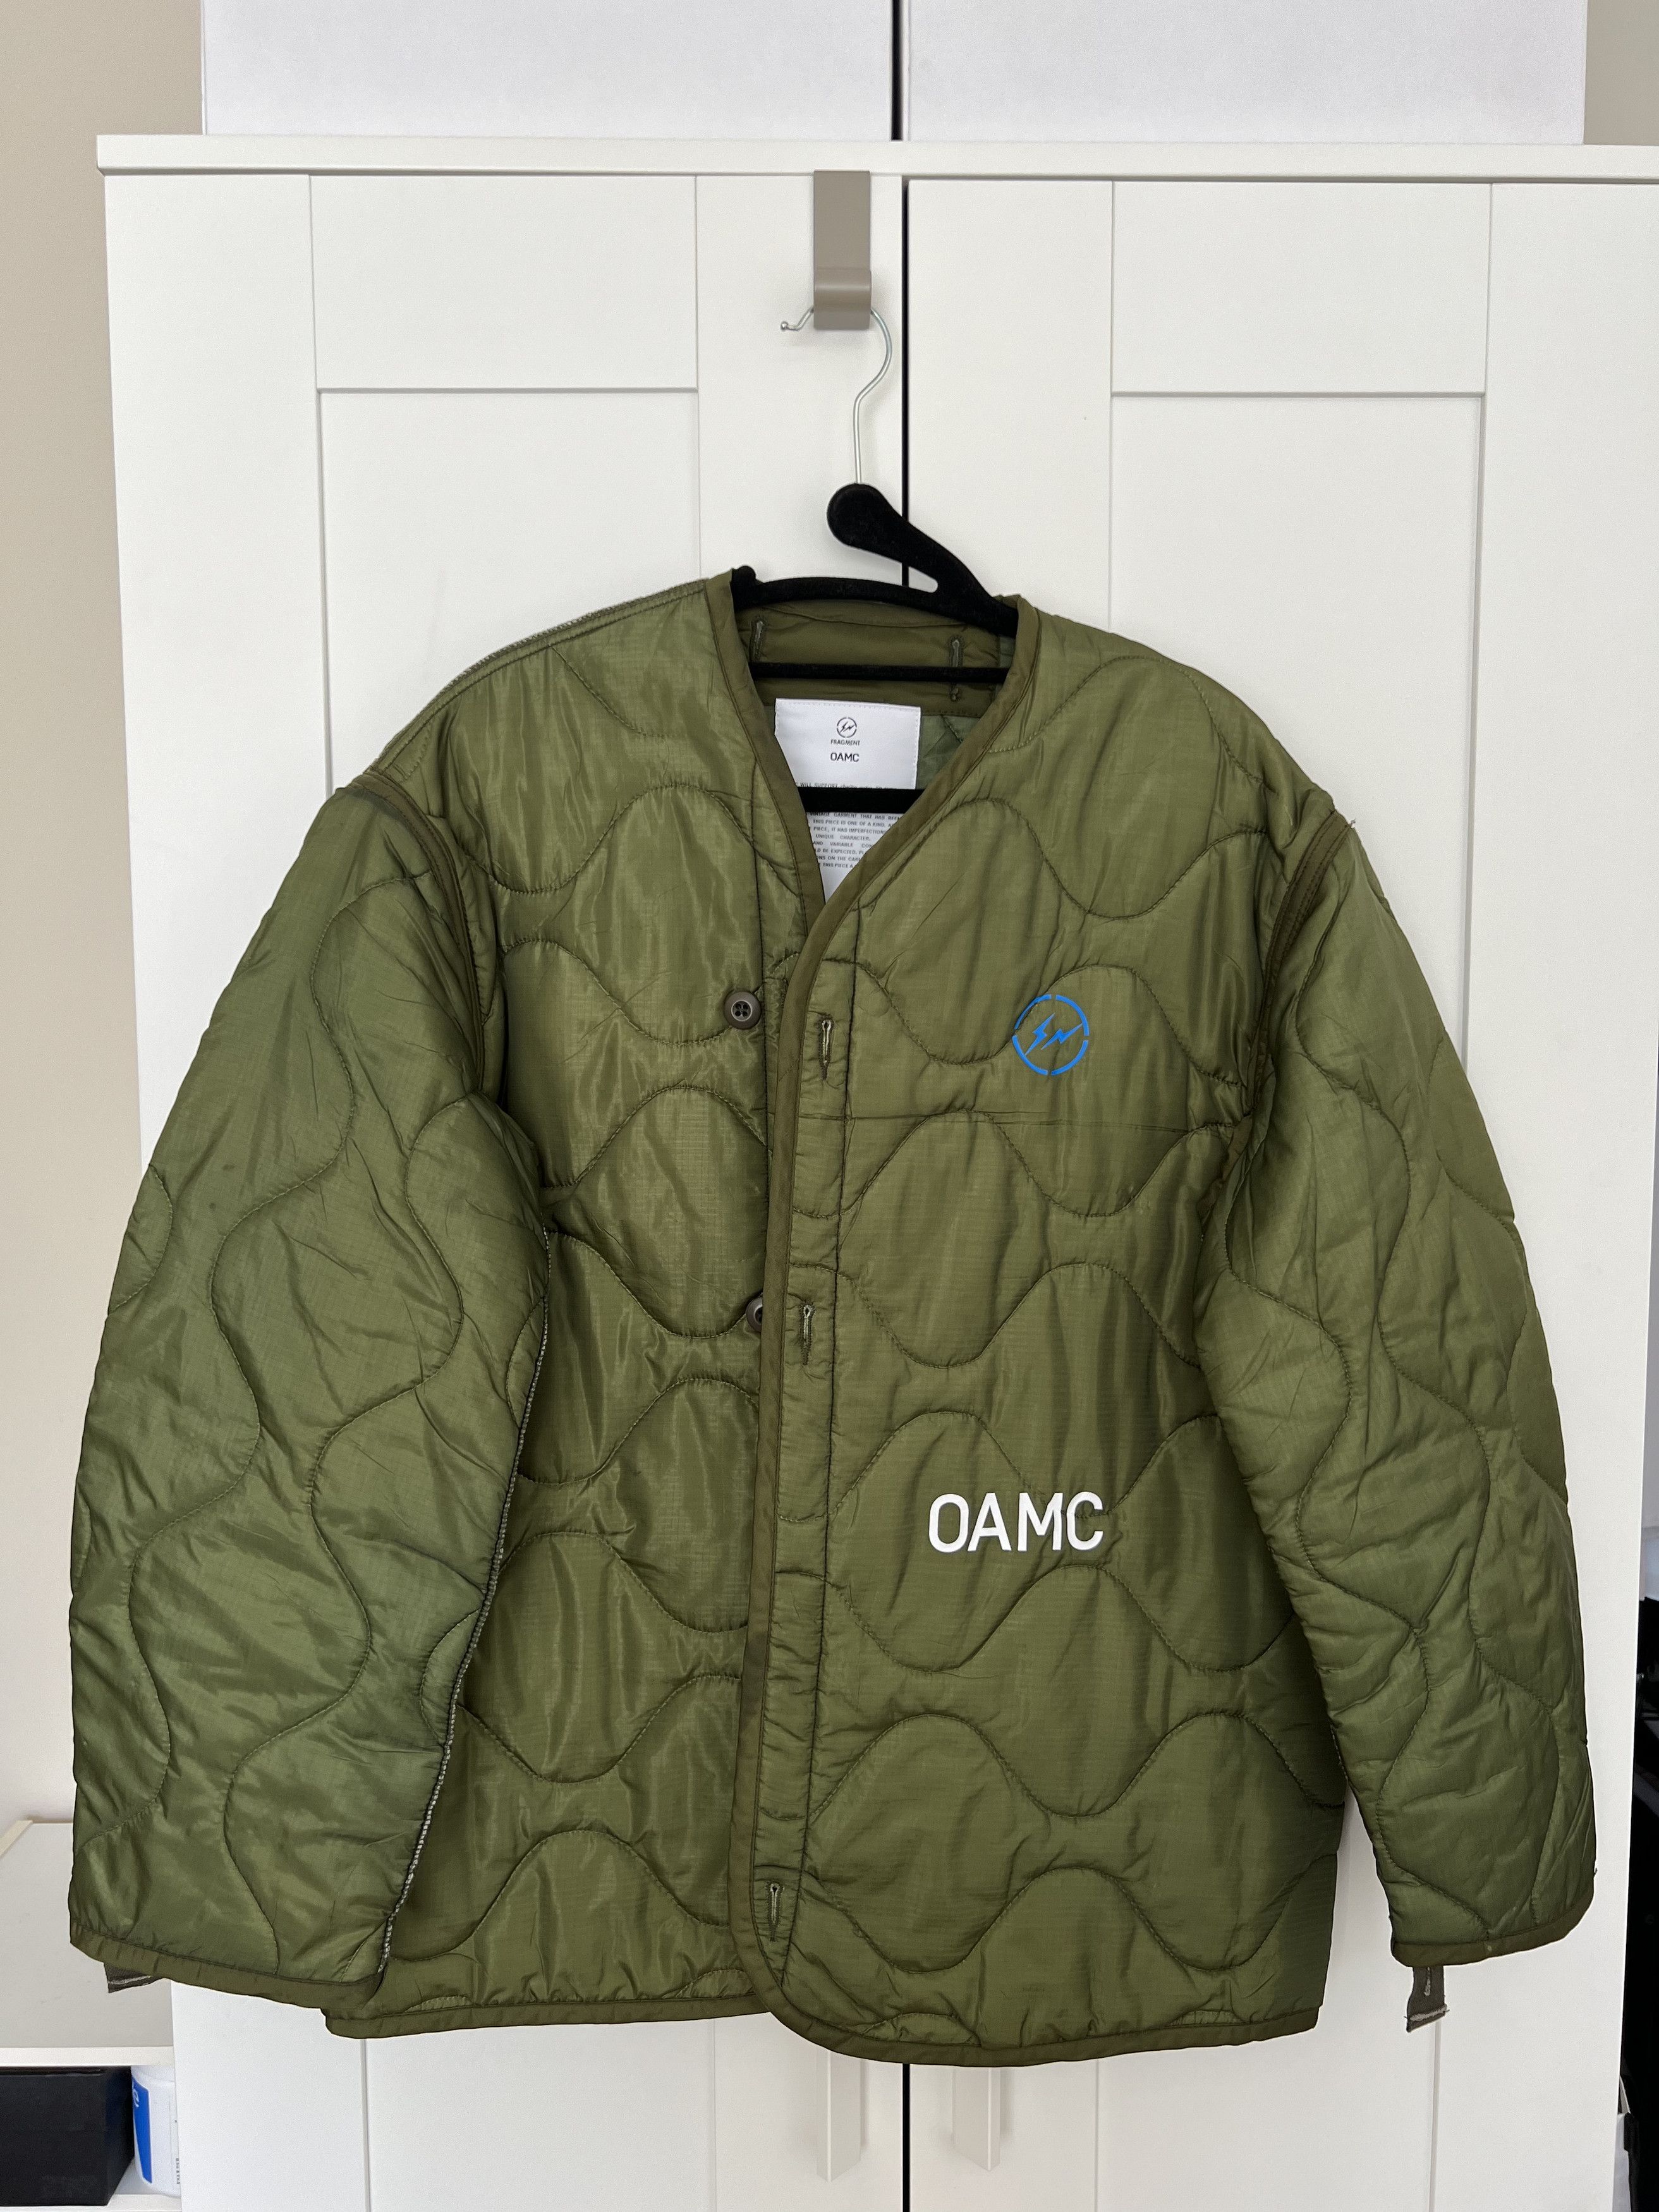 Oamc OAMC X FRAGMENT DESIGN LINER | Grailed